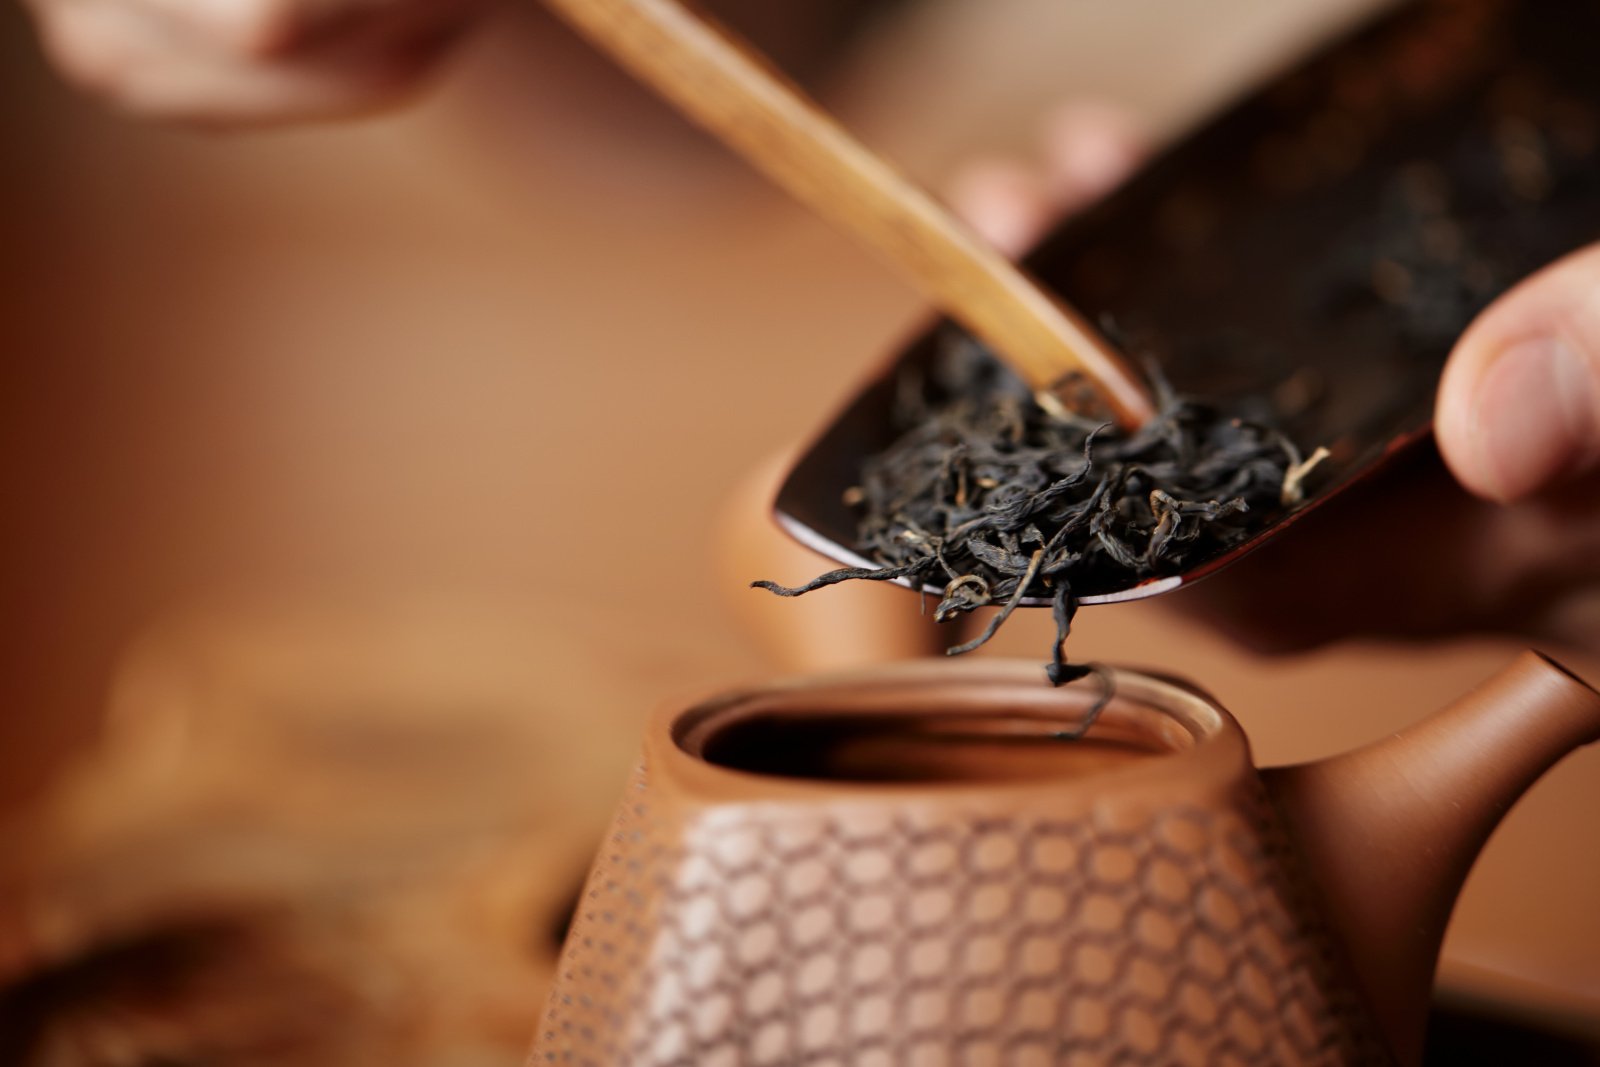 Советы чайного мастера, или как улучшить вашу чашку чая